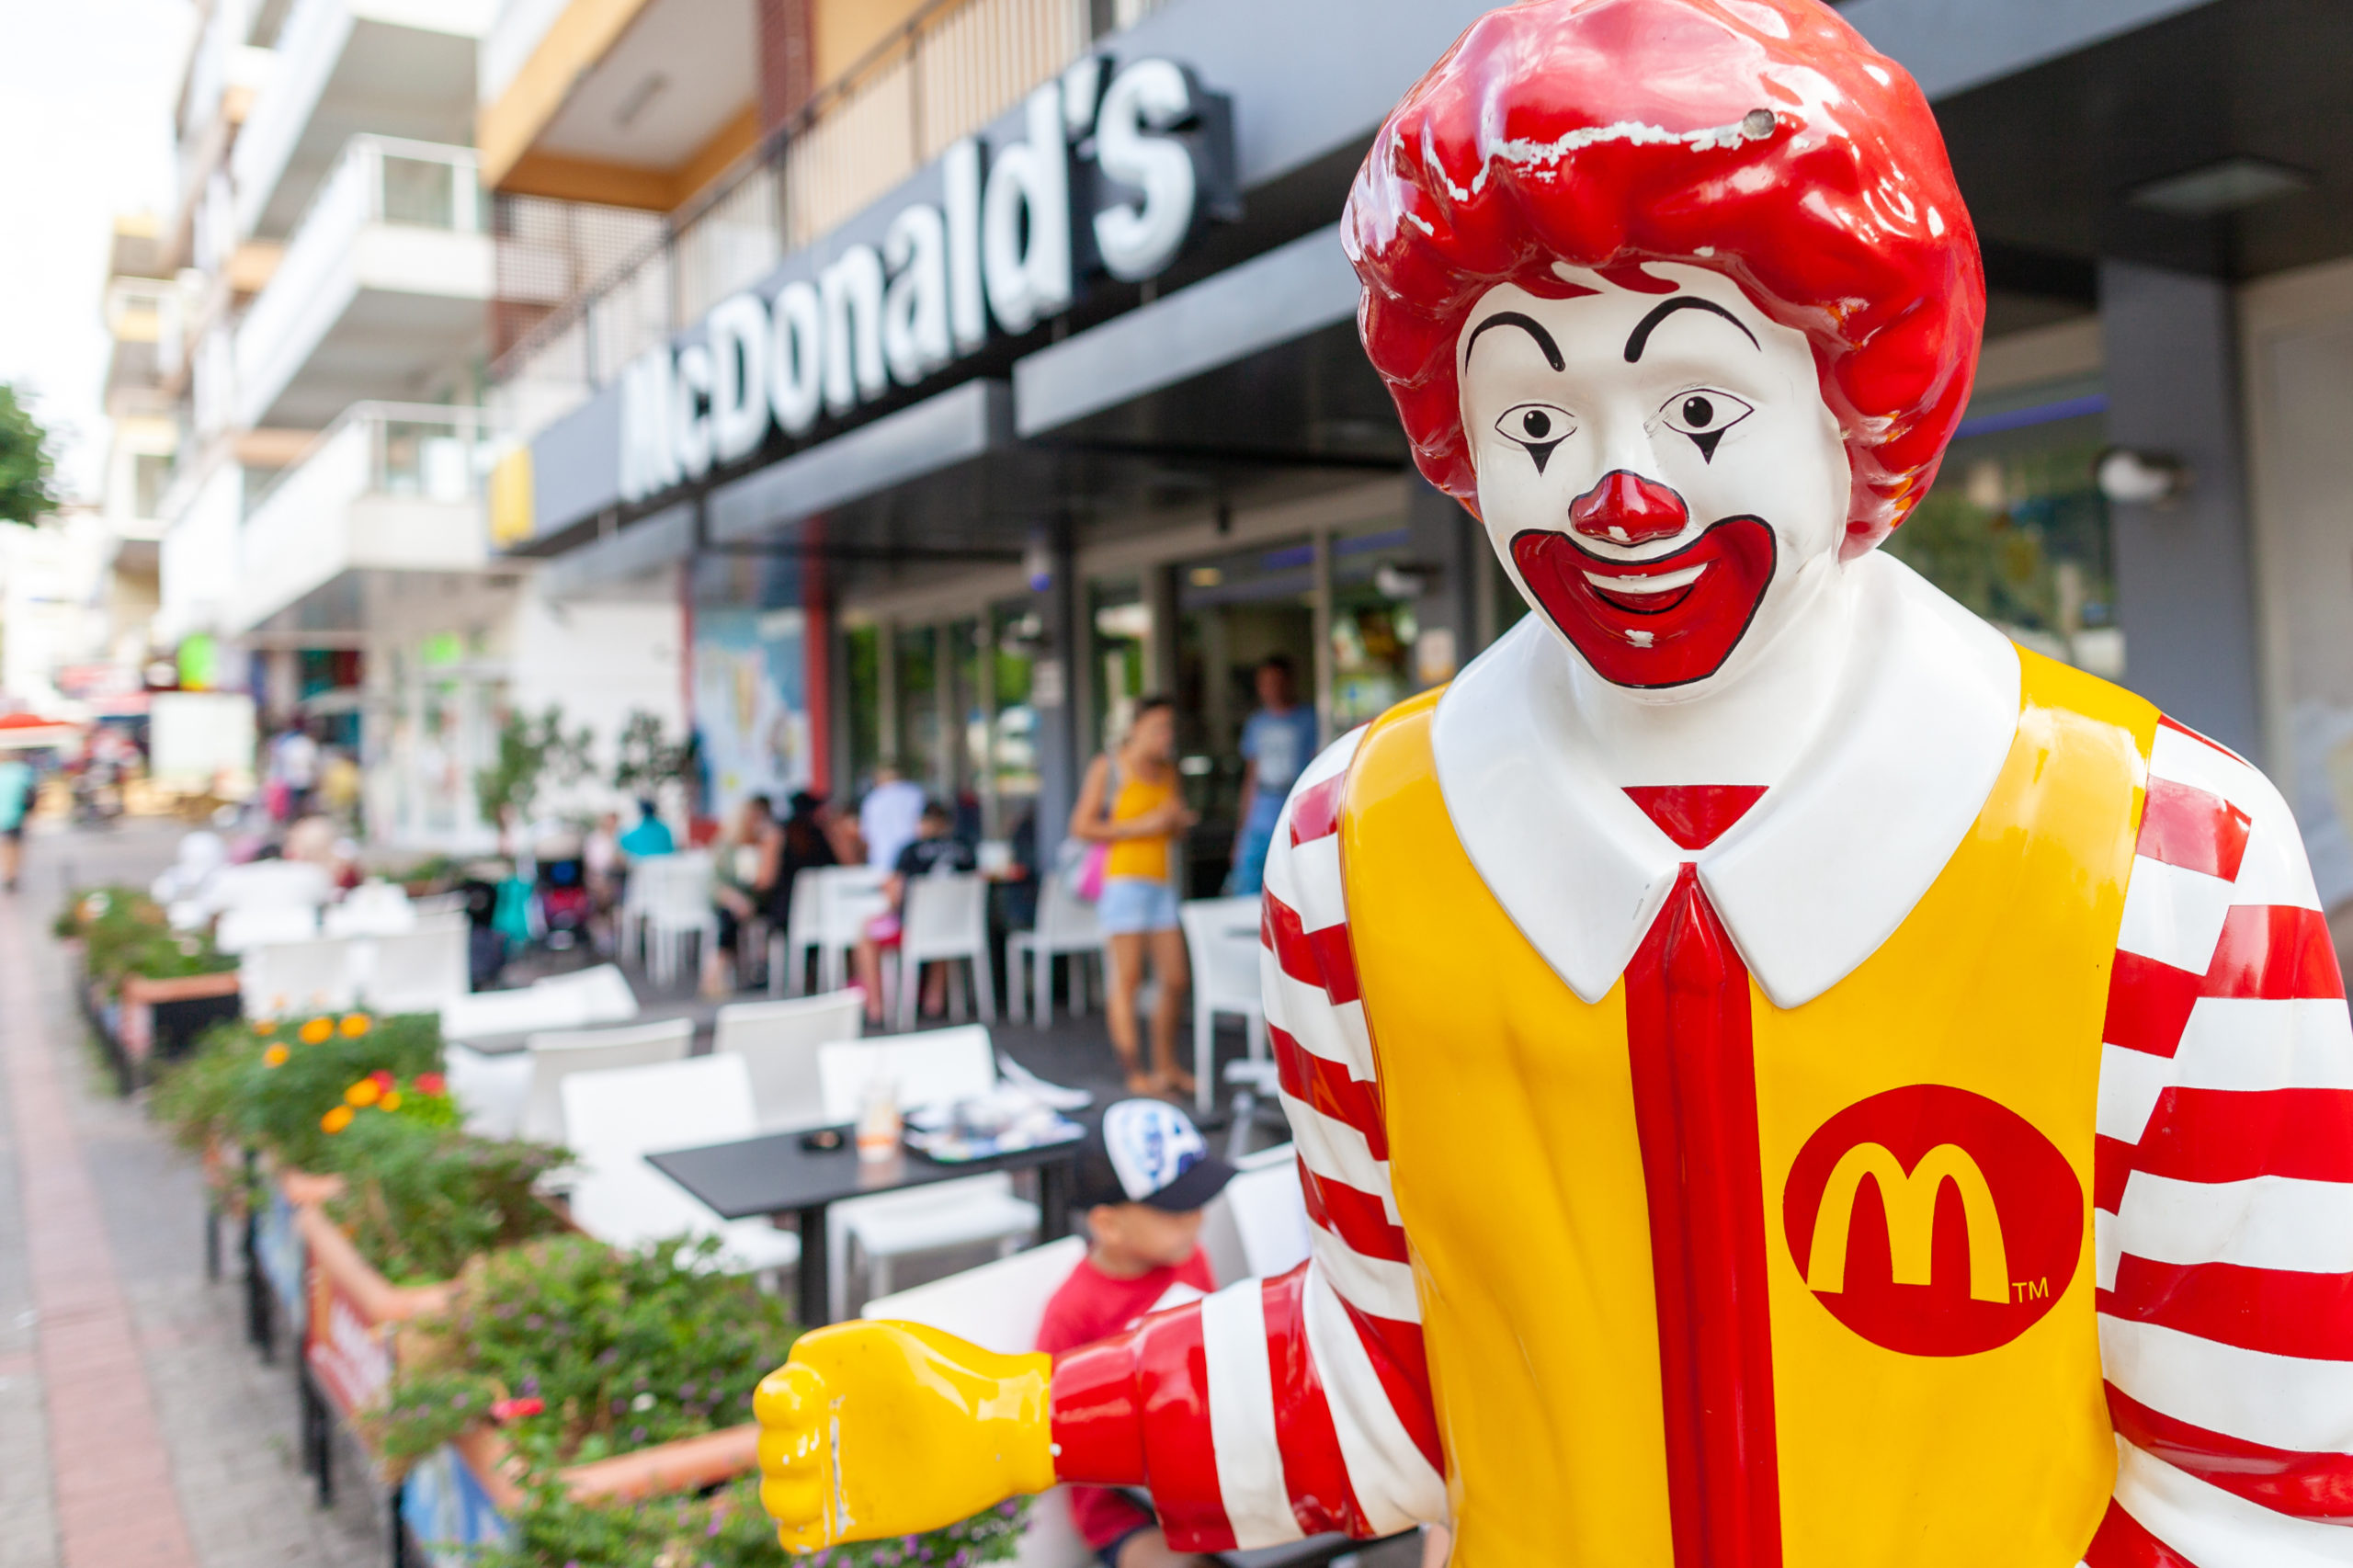 Ronald McDonald deutet auf den Eingang einer McDonalds Filliale. Symbolbild für die Überförderung von Unternehmen in Österreich.